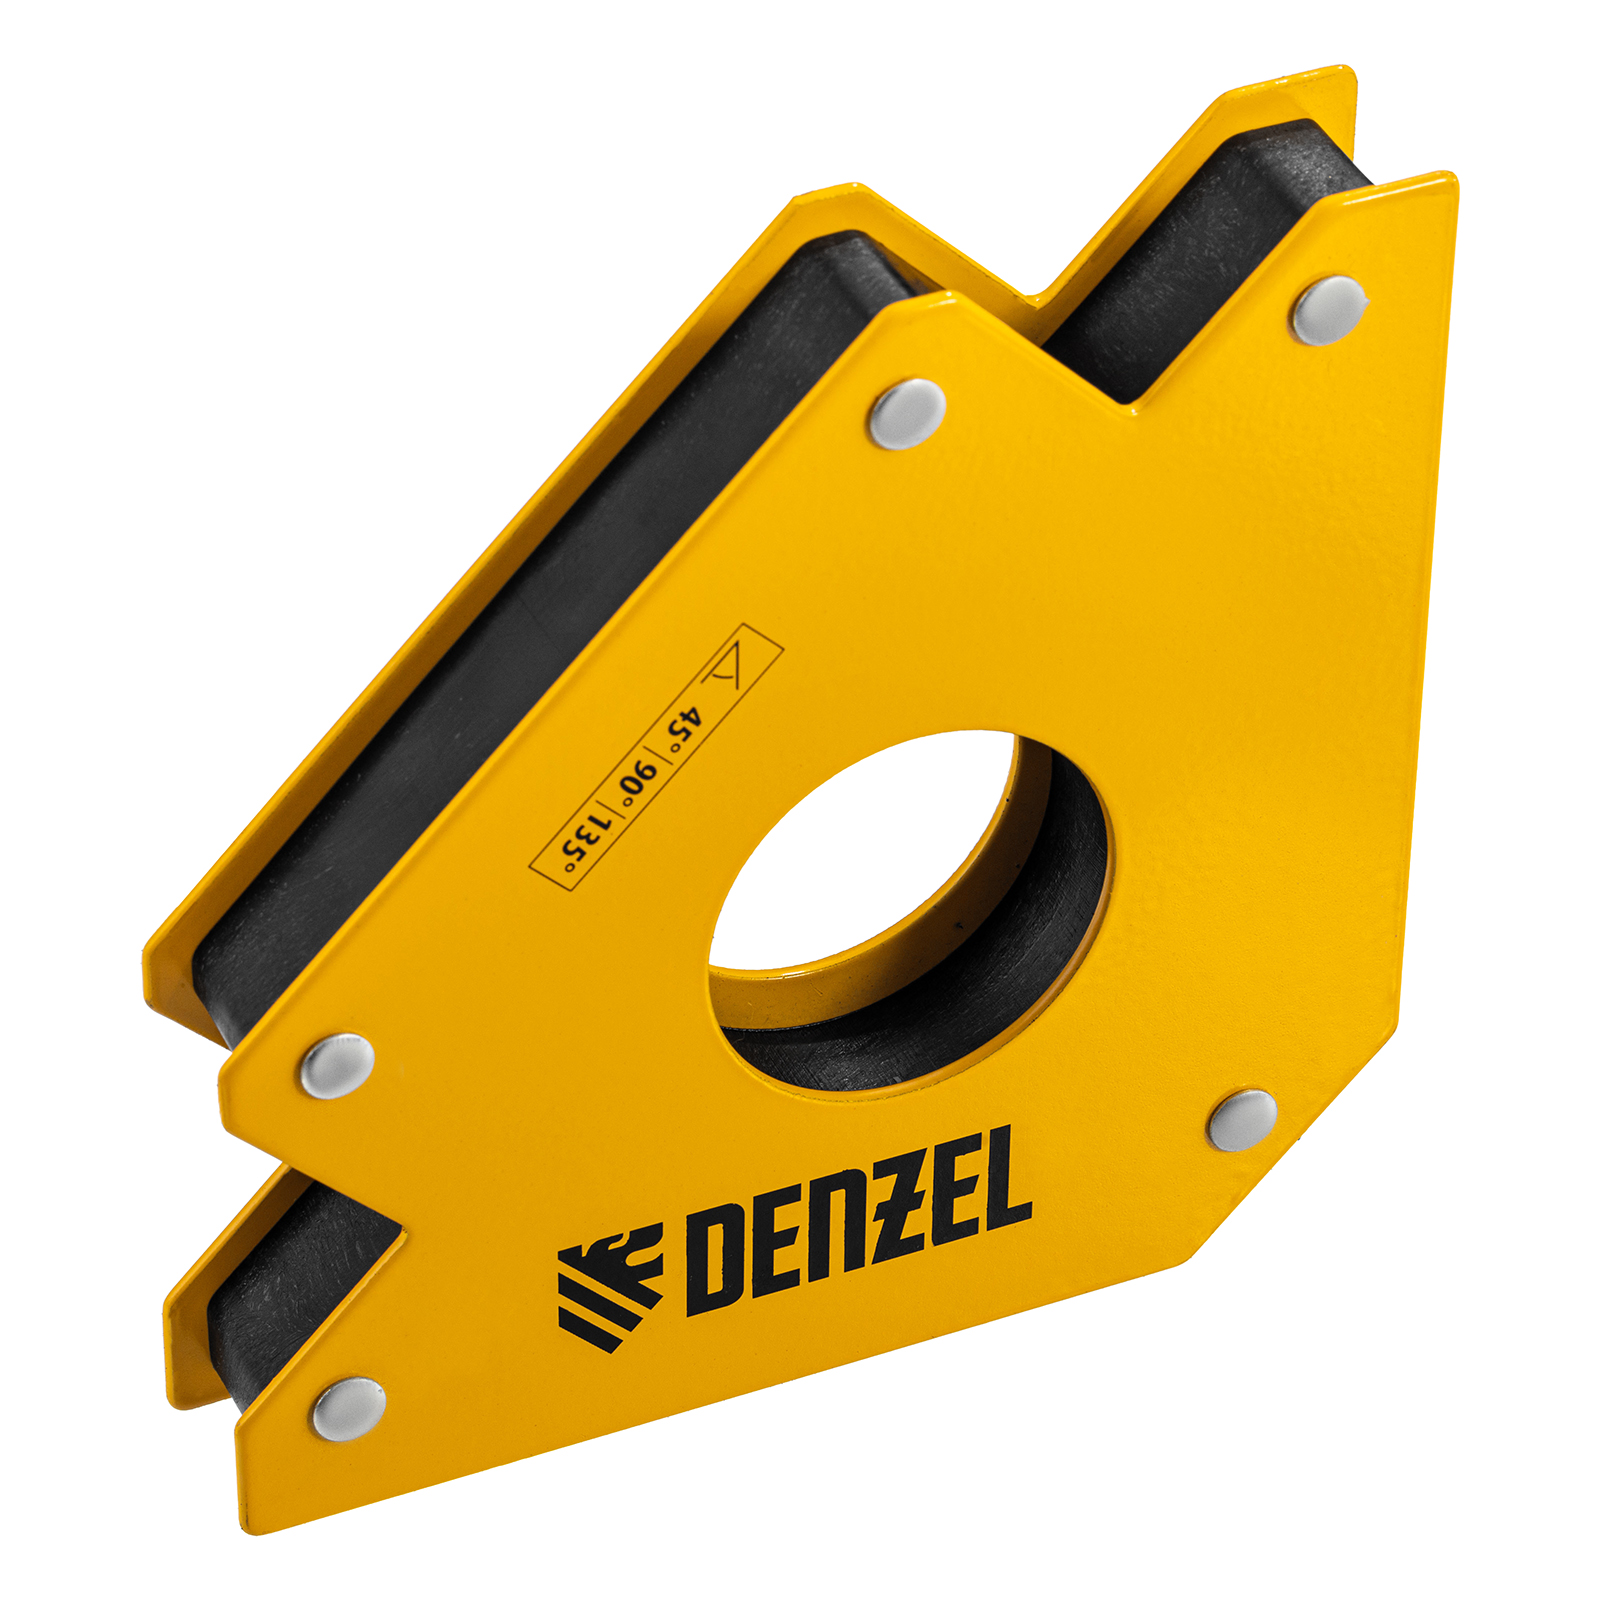 Фиксатор магнитный для сварочных работ DENZEL усилие 75 LB 97560 магнитный фиксатор для сварочных работ denzel